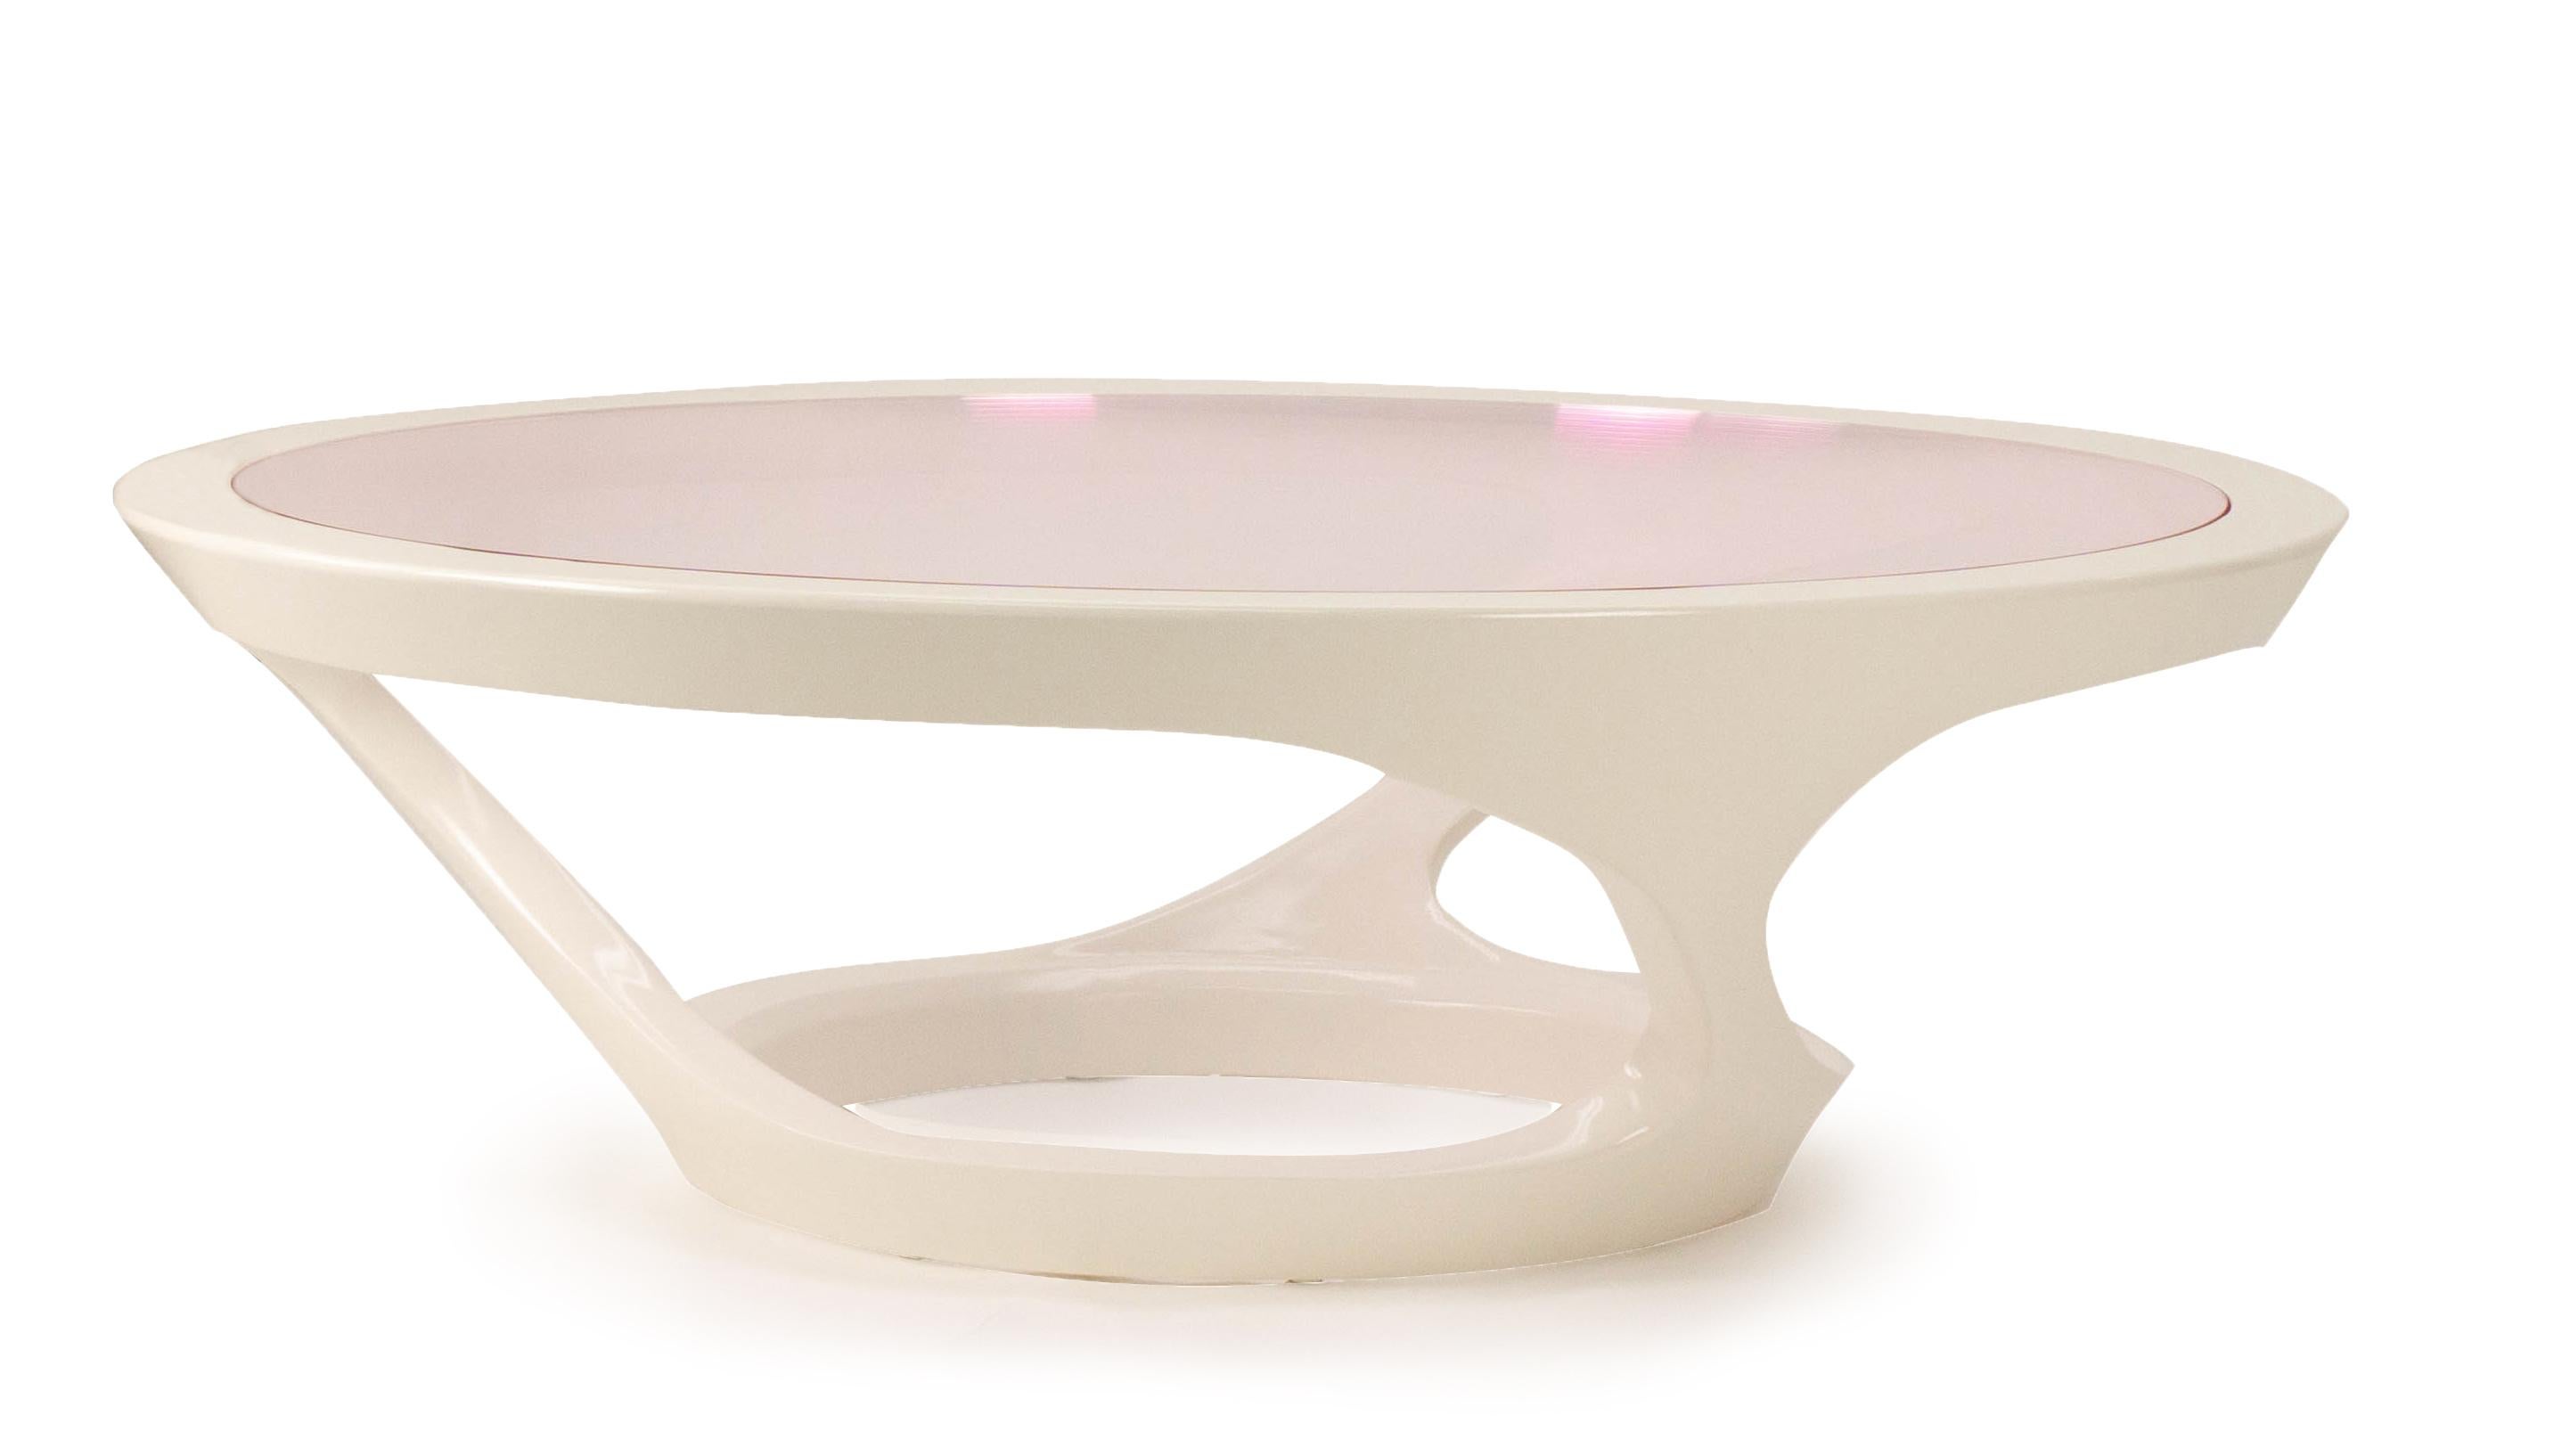 Notre table basse Whiting est une table ronde avec une base sculptée laquée en blanc et un plateau en Lucite rose. Fabriqué dans notre atelier du Connecticut. La taille, la Lucite et la couleur de la base sont personnalisables.

Mesures :
53